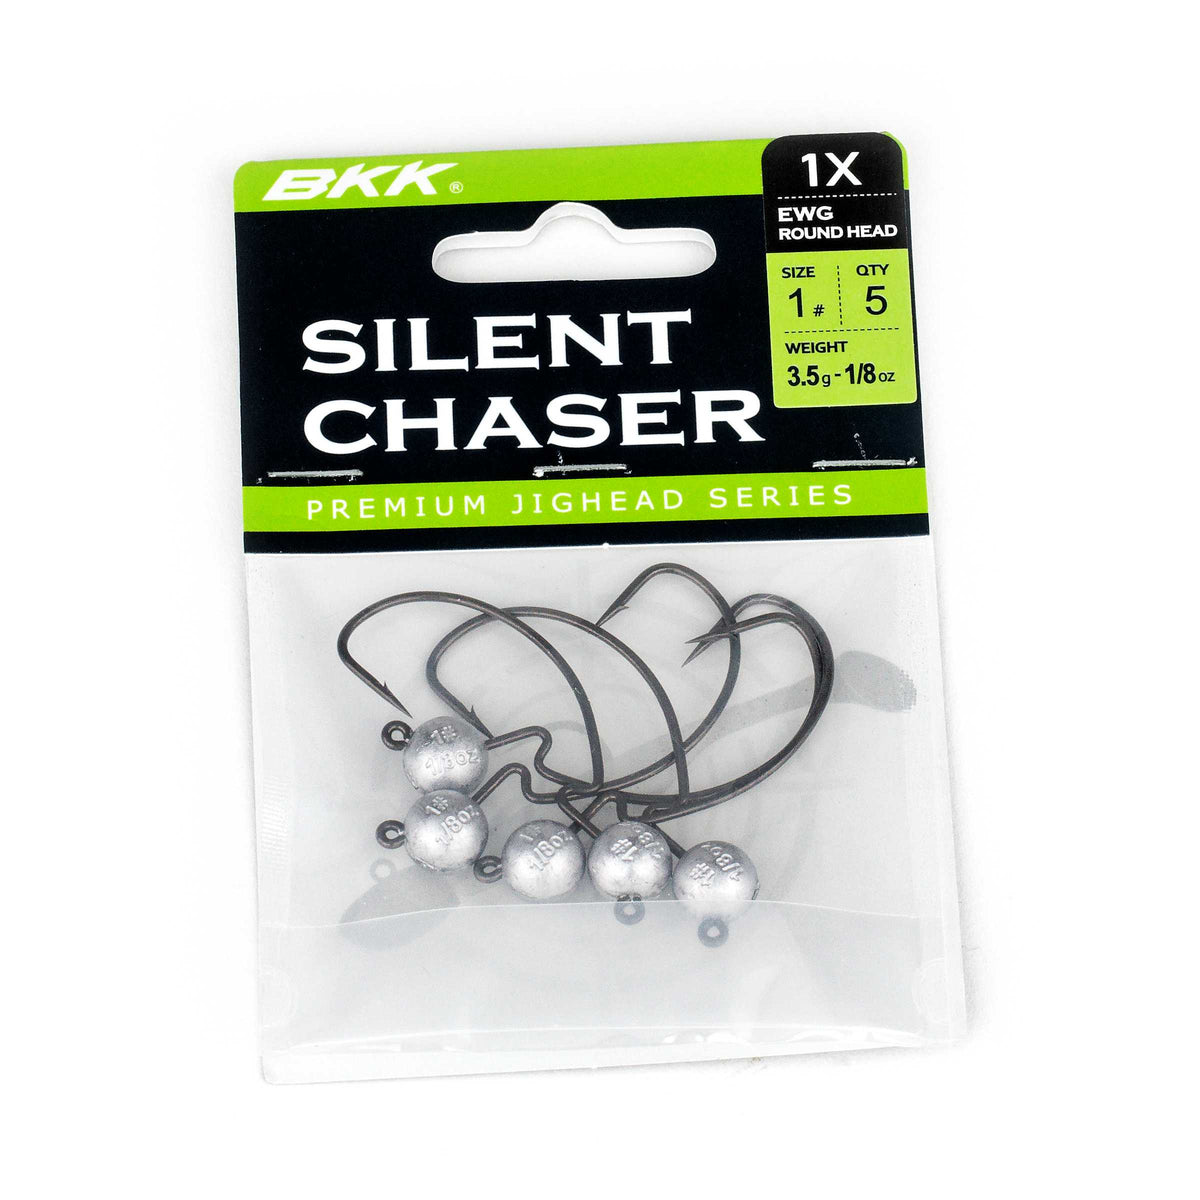 BKK Silent Chaser 1x EWG Round Head Jig Heads | 1/16oz